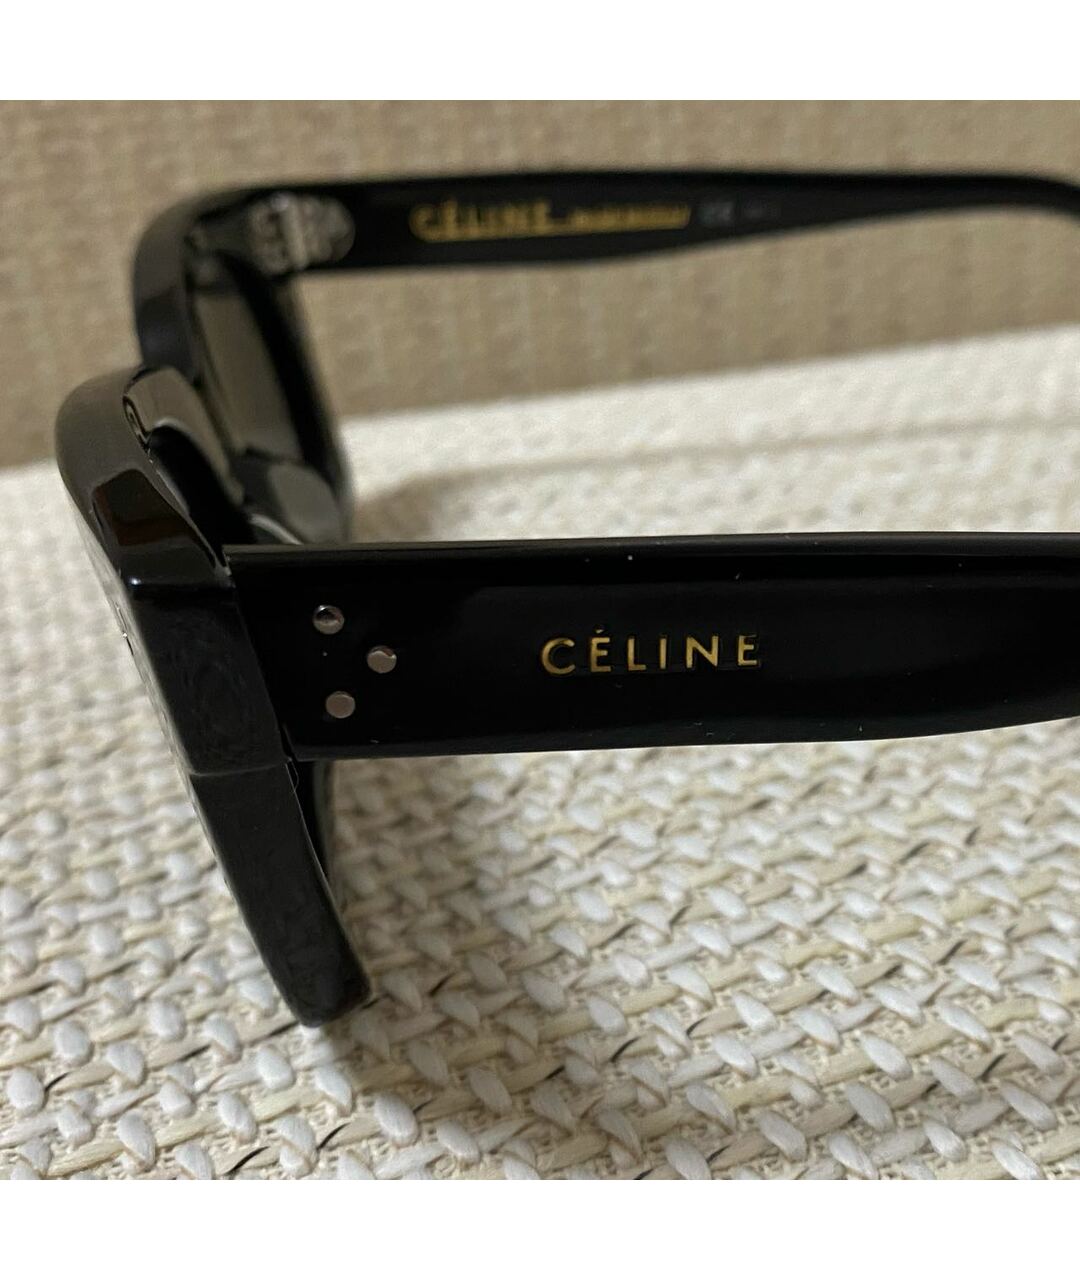 CELINE PRE-OWNED Черные пластиковые солнцезащитные очки, фото 2